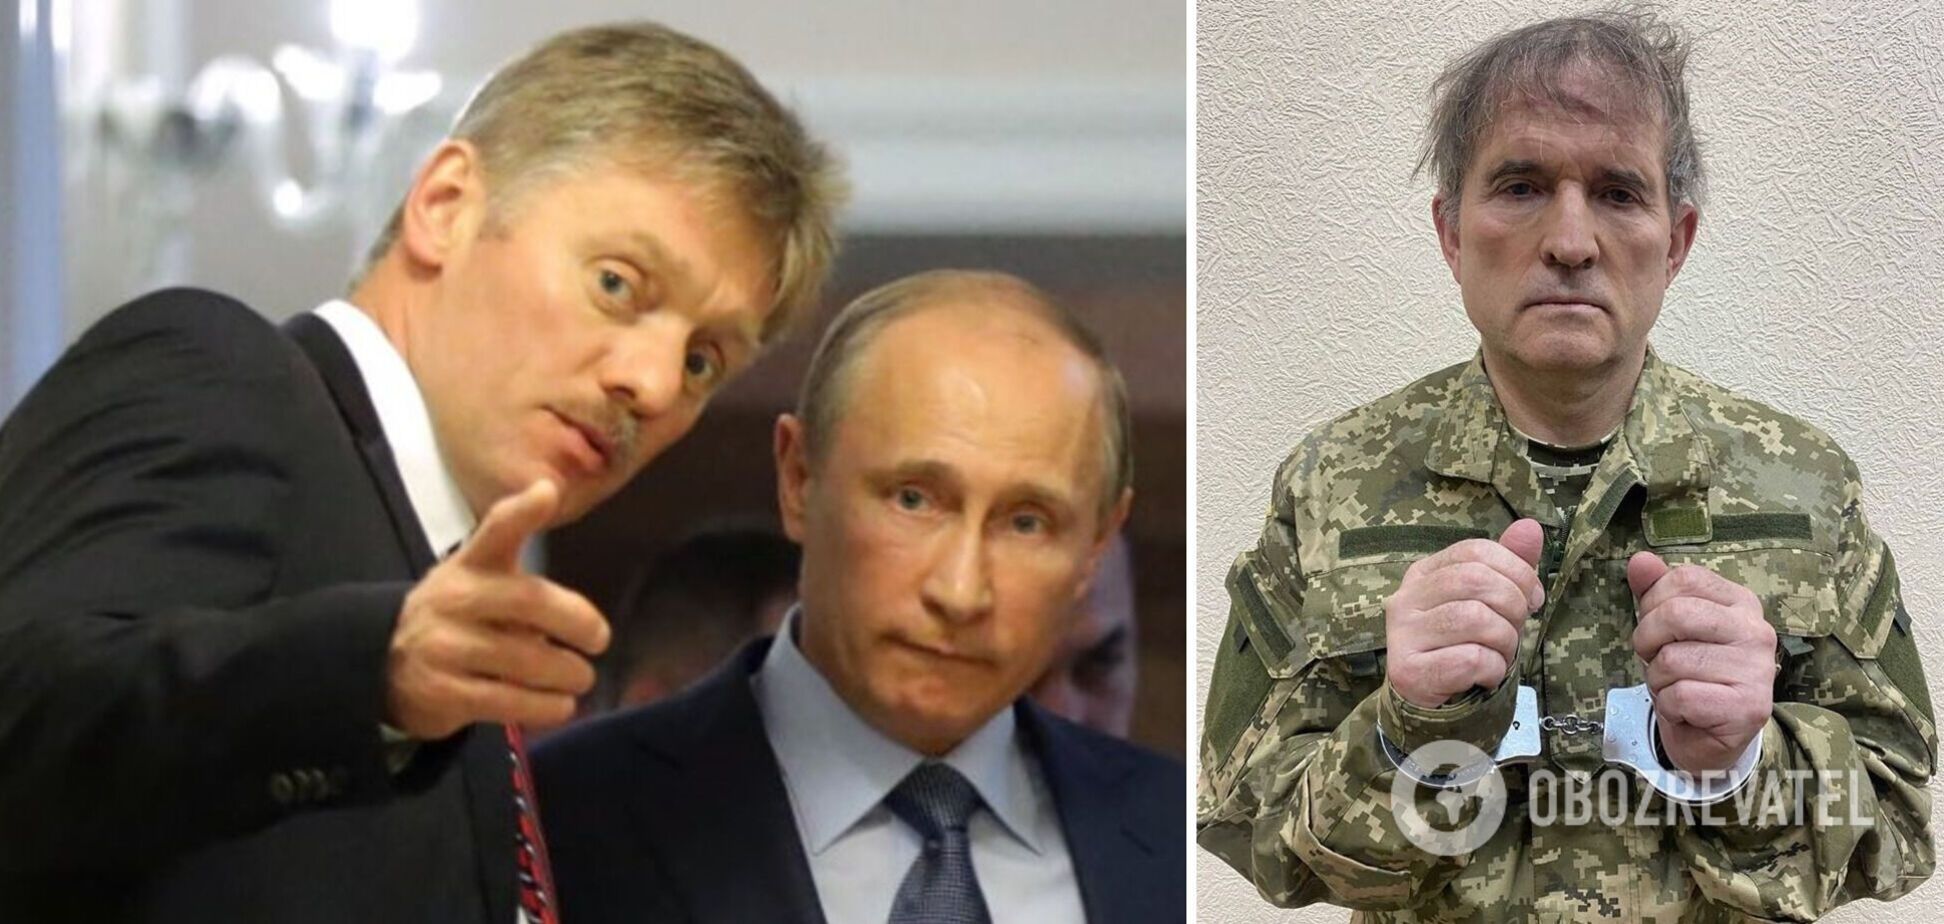 Реакції немає: у Путіна заявили, що бачили звернення Медведчука із проханням про обмін